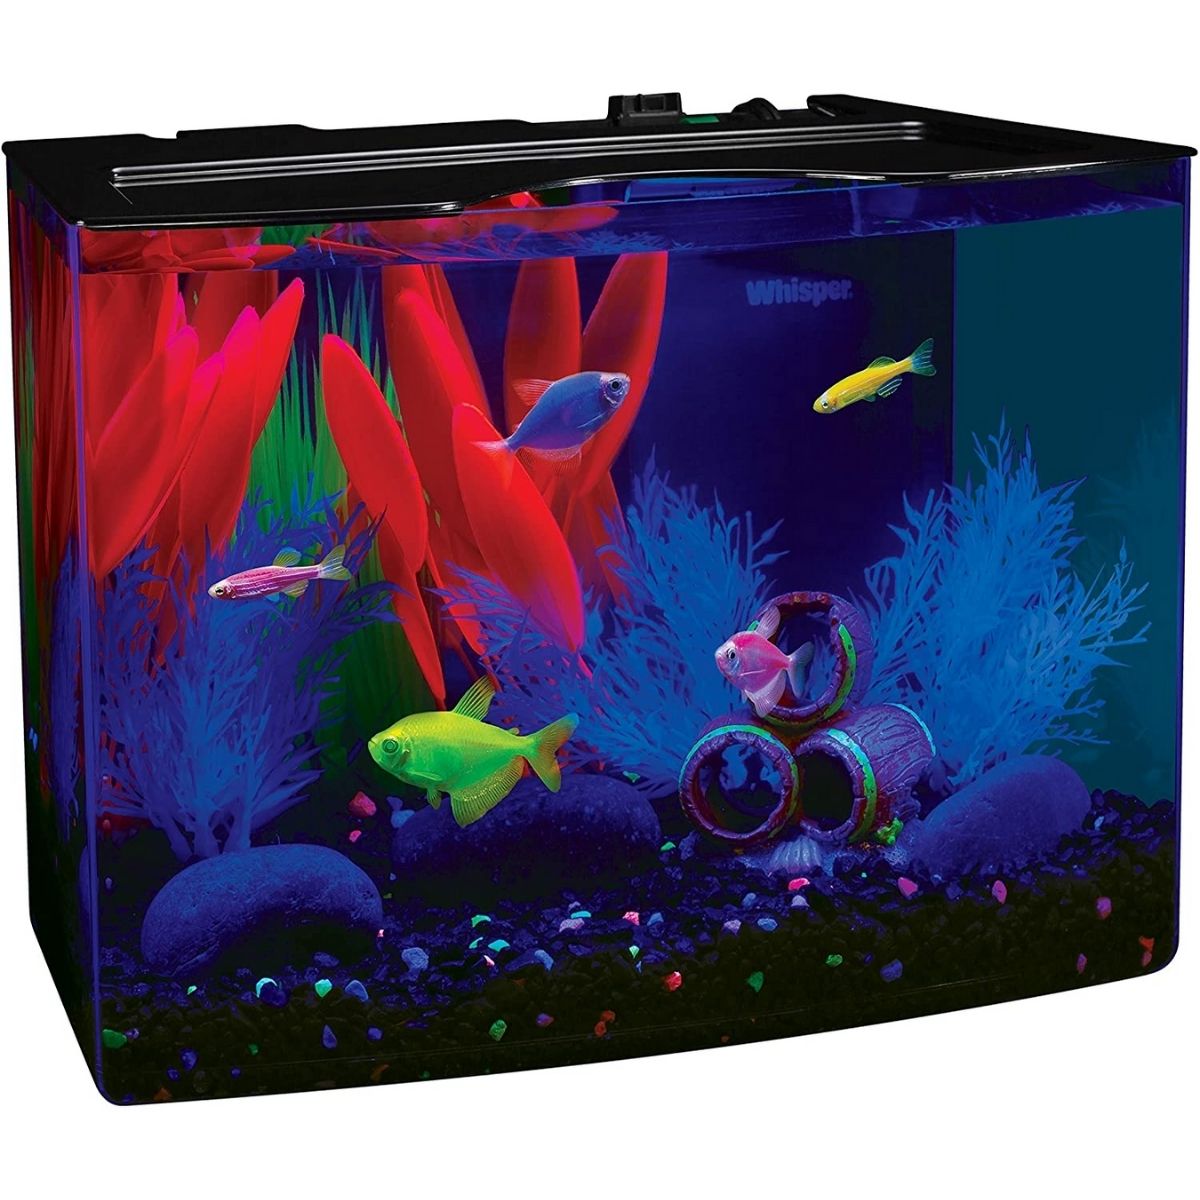 The Best Bow Front Aquarium Option: GloFish Crescent